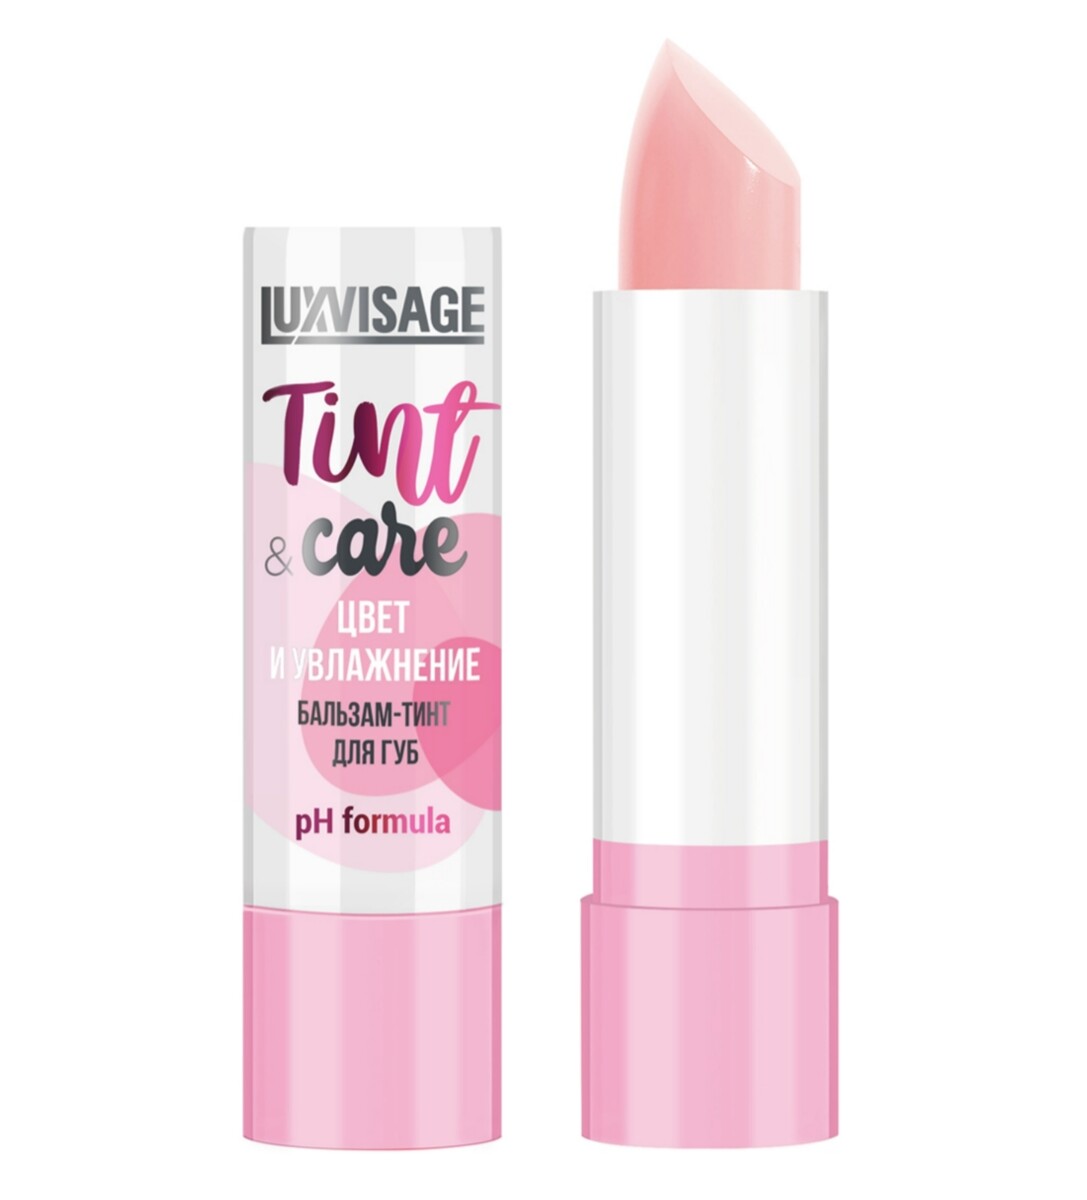 Luxvisage бальзам-тинт для губ luxvisage tint & care ph formula цвет и увлажнение тон 01 3,9г масло бальзам для губ miracle care тон